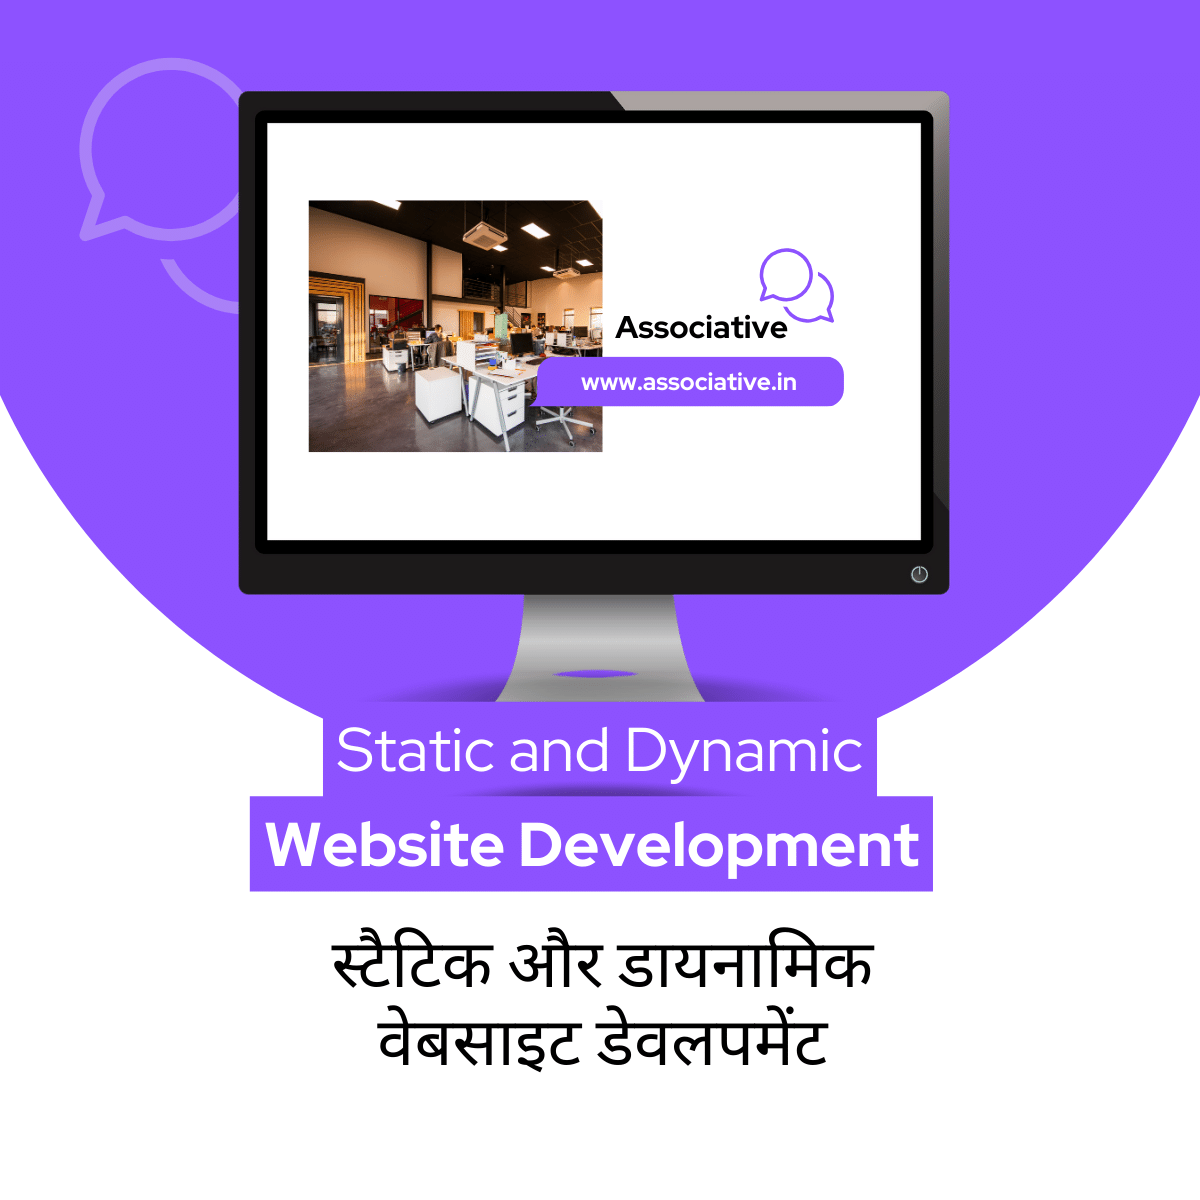 Static and Dynamic Website Development स्टैटिक और डायनामिक वेबसाइट डेवलपमेंट